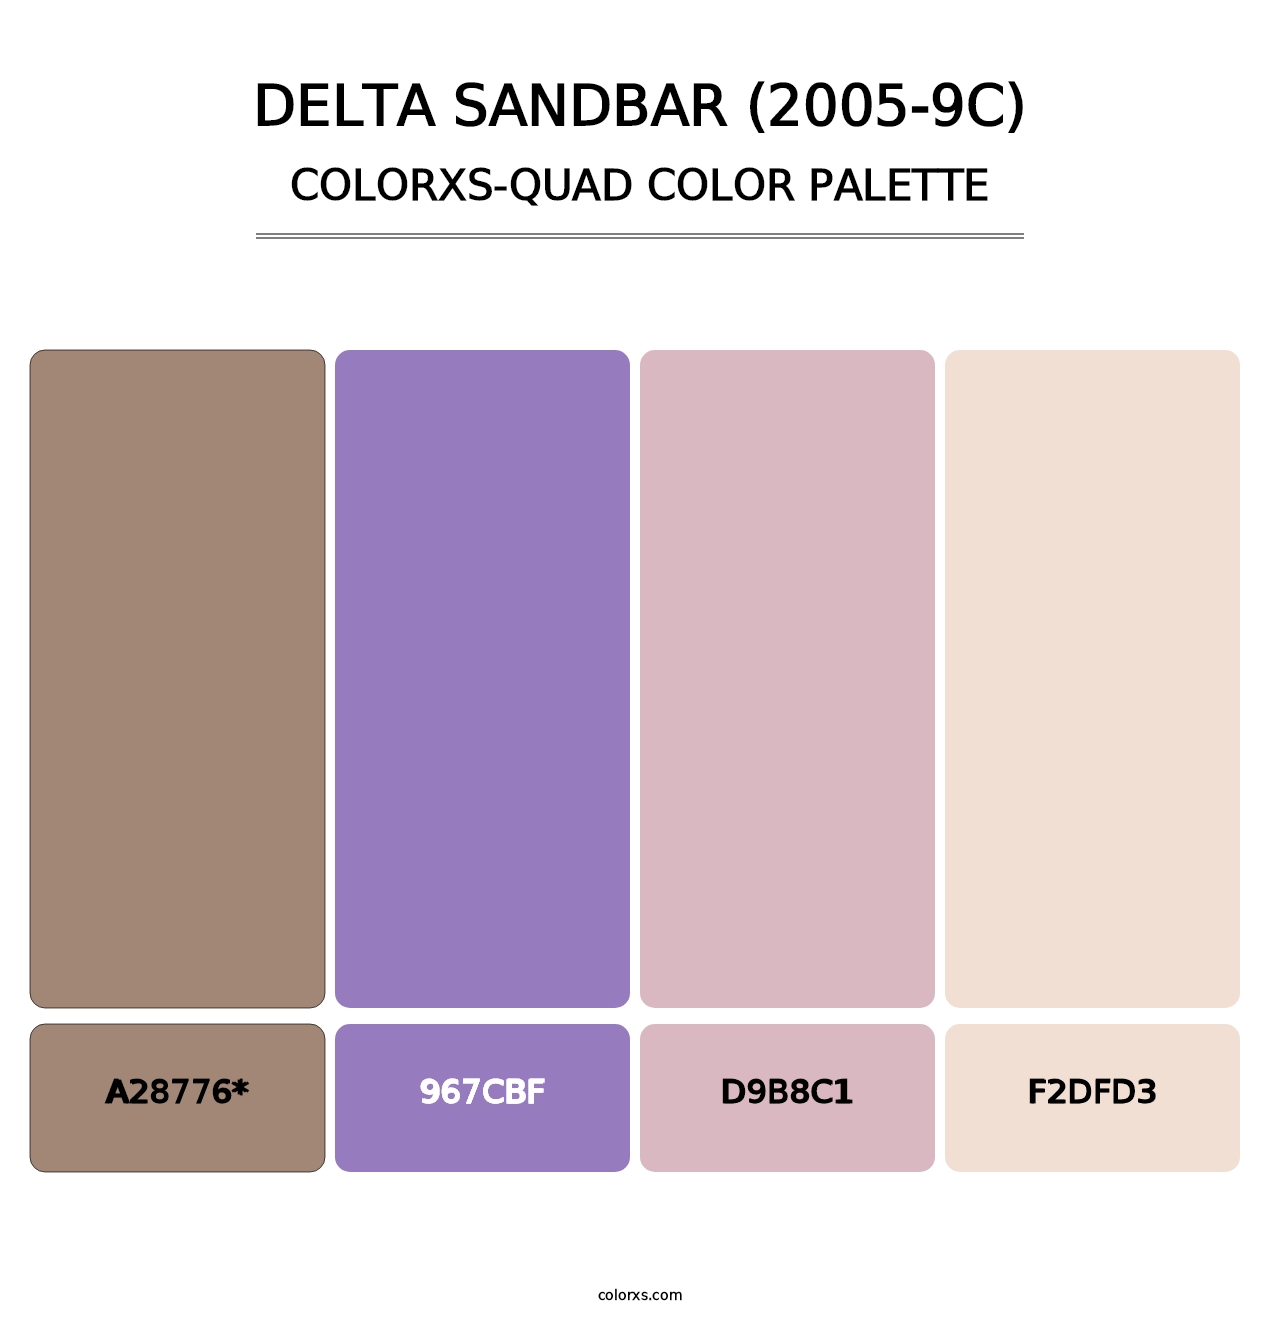 Delta Sandbar (2005-9C) - Colorxs Quad Palette